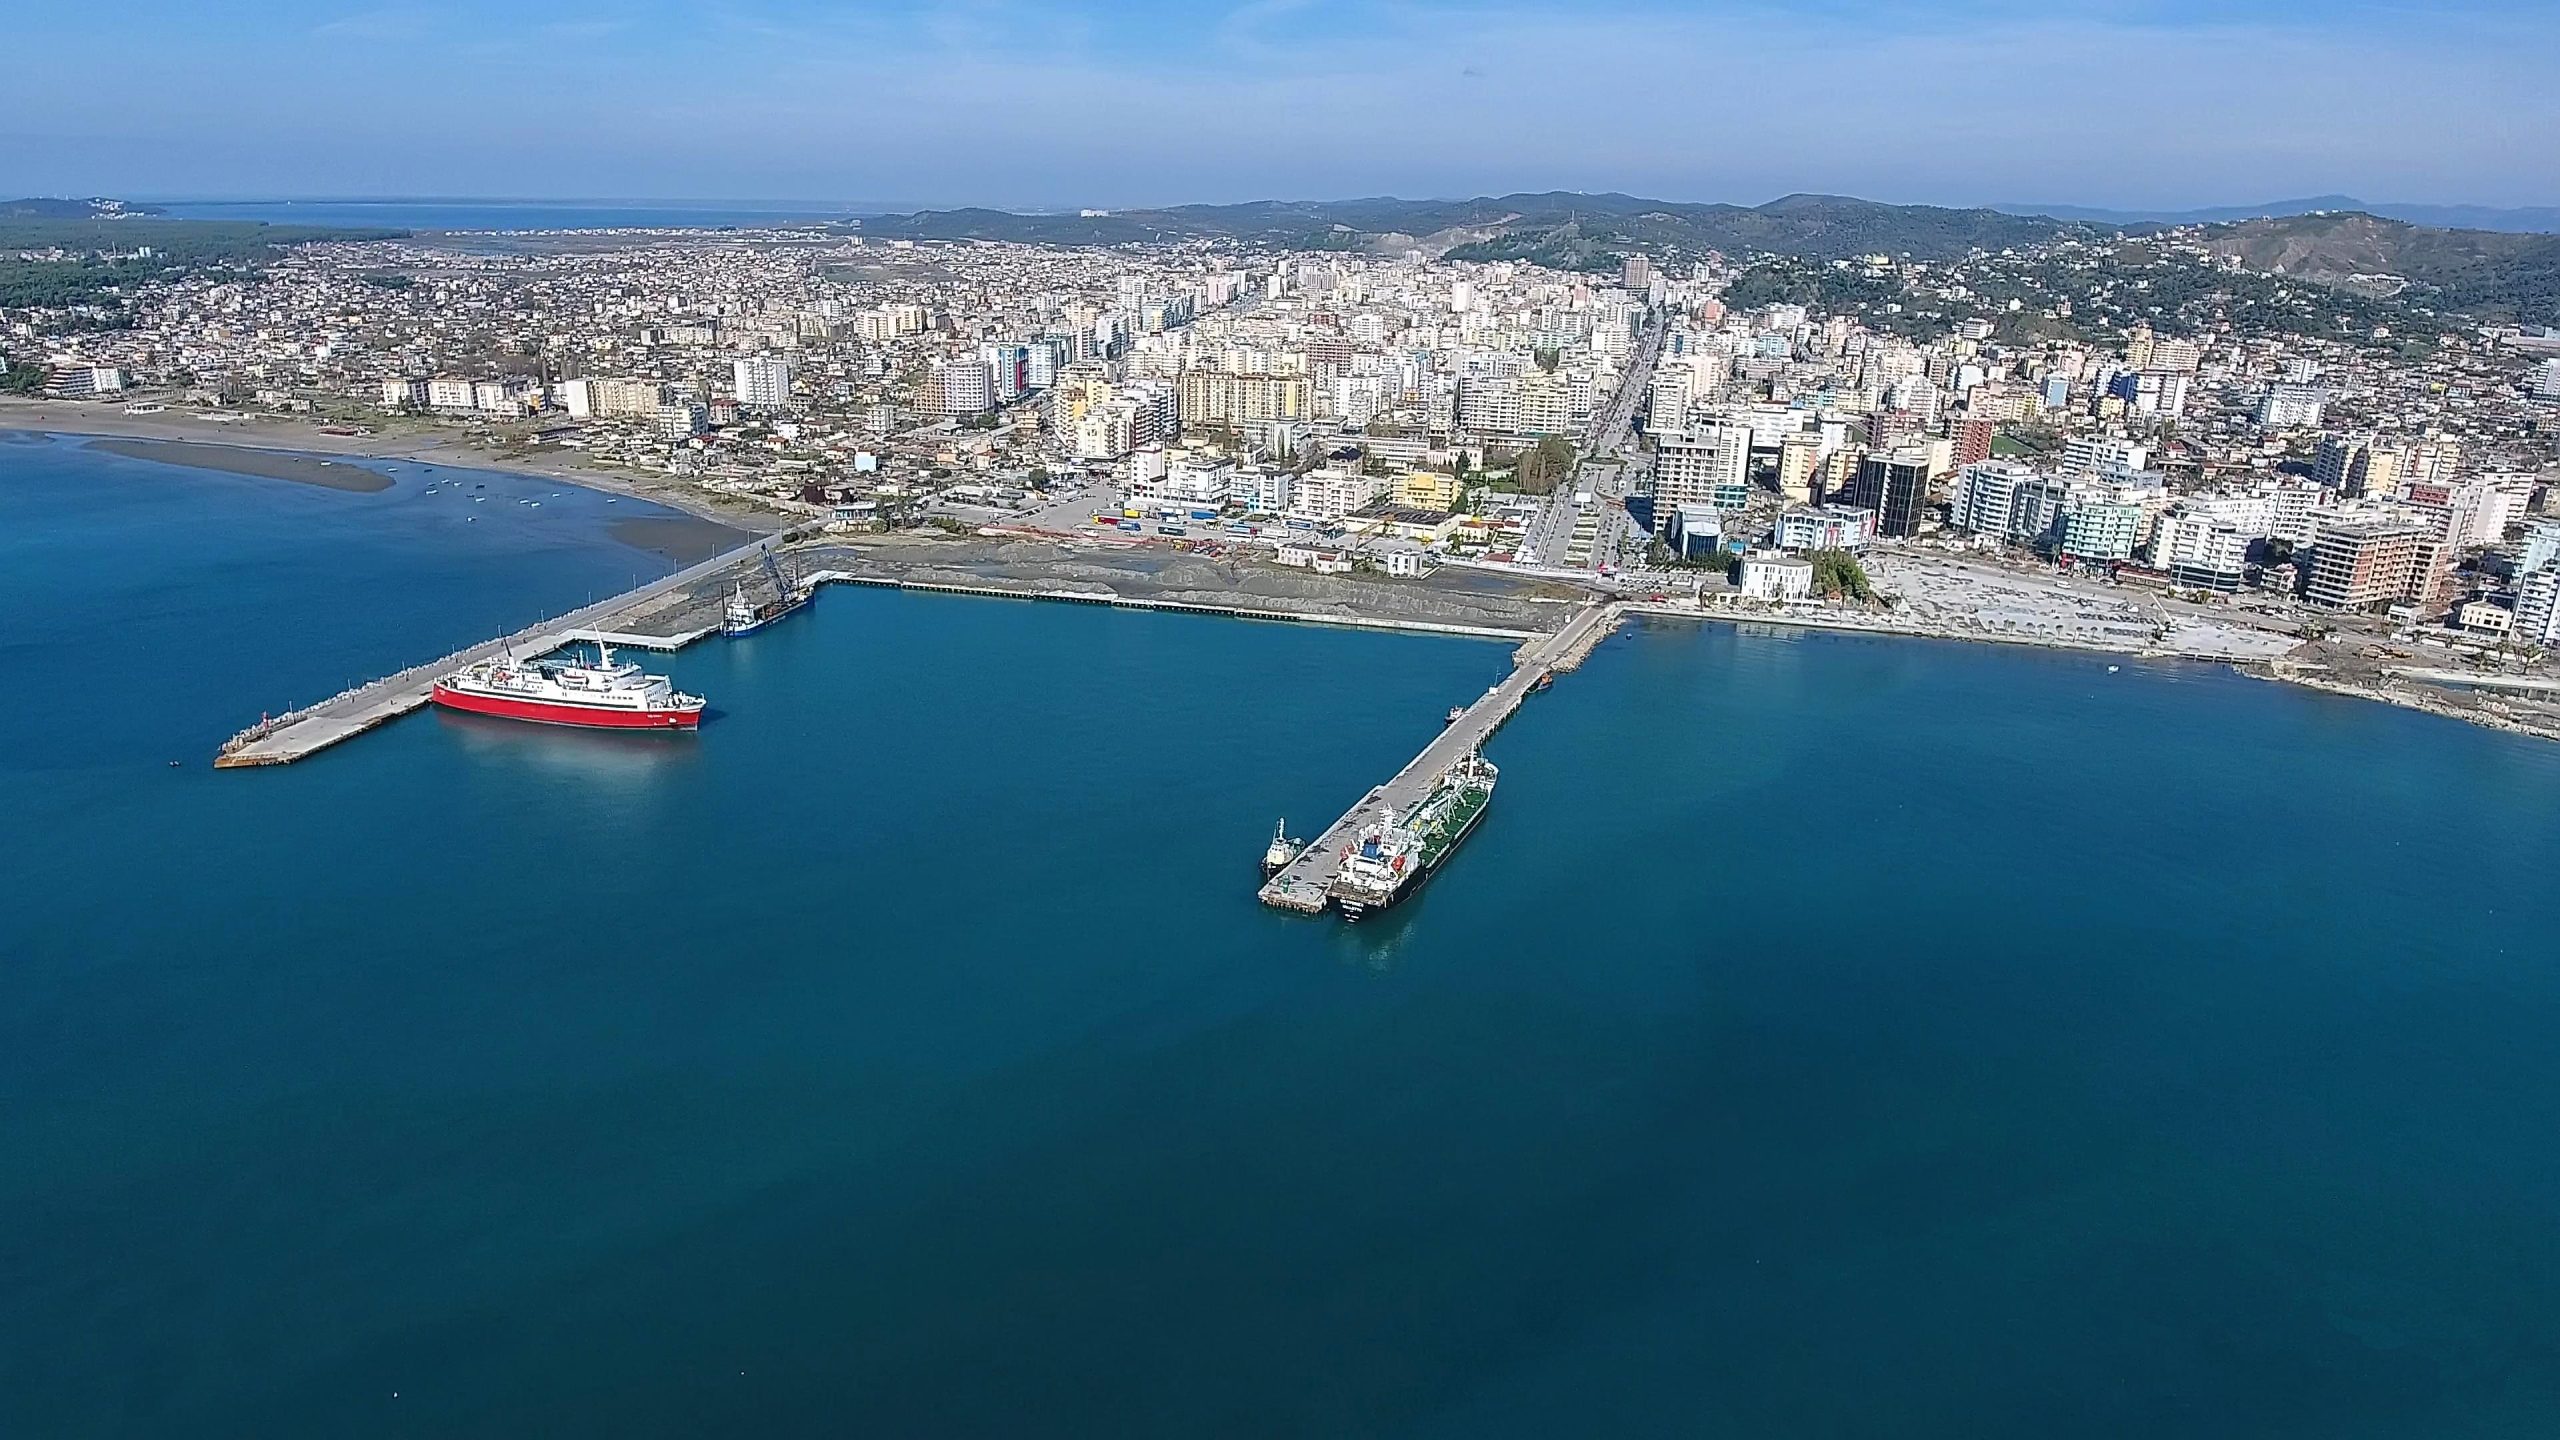 Porti i Vlorës, porti i dytë më i rëndësishëm në Shqipëri